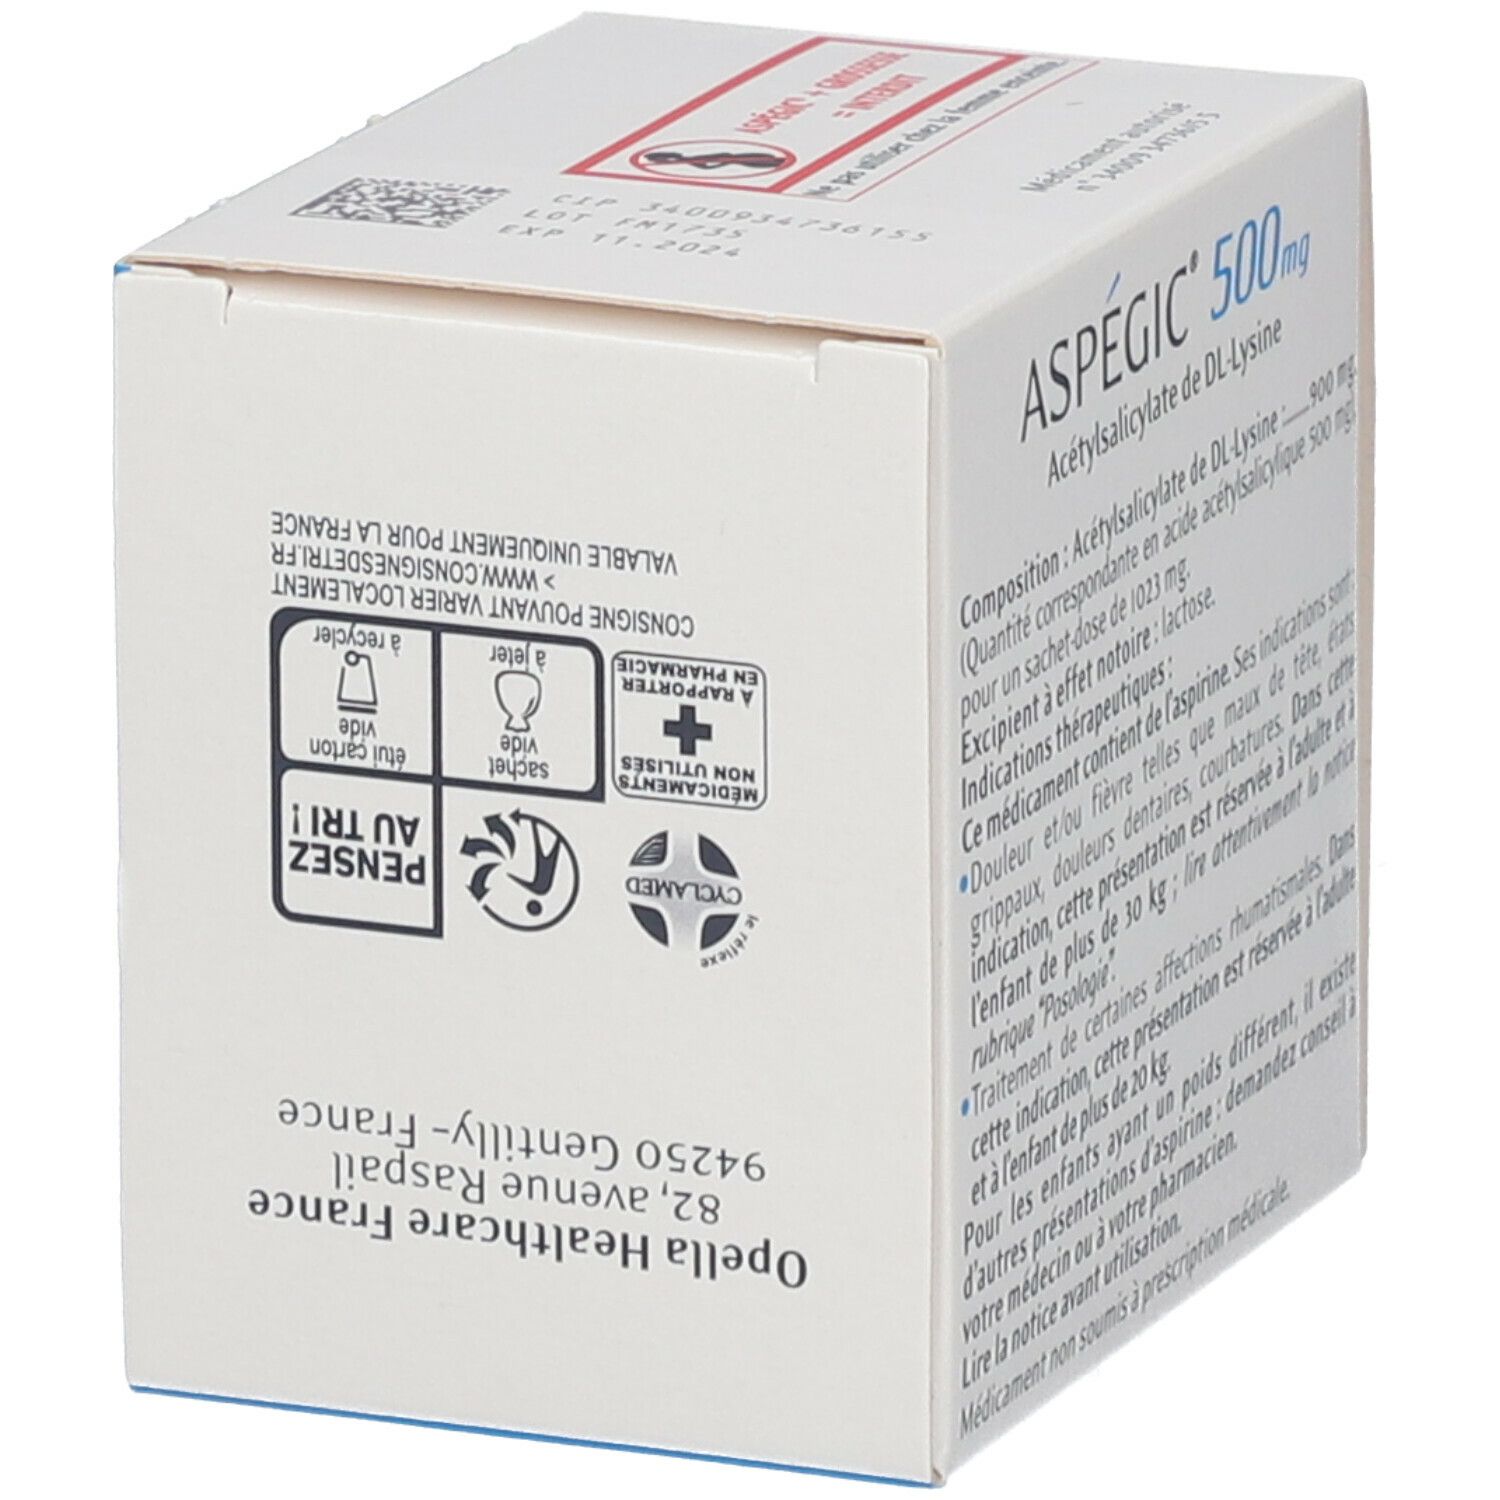 Aspégic® 500 mg